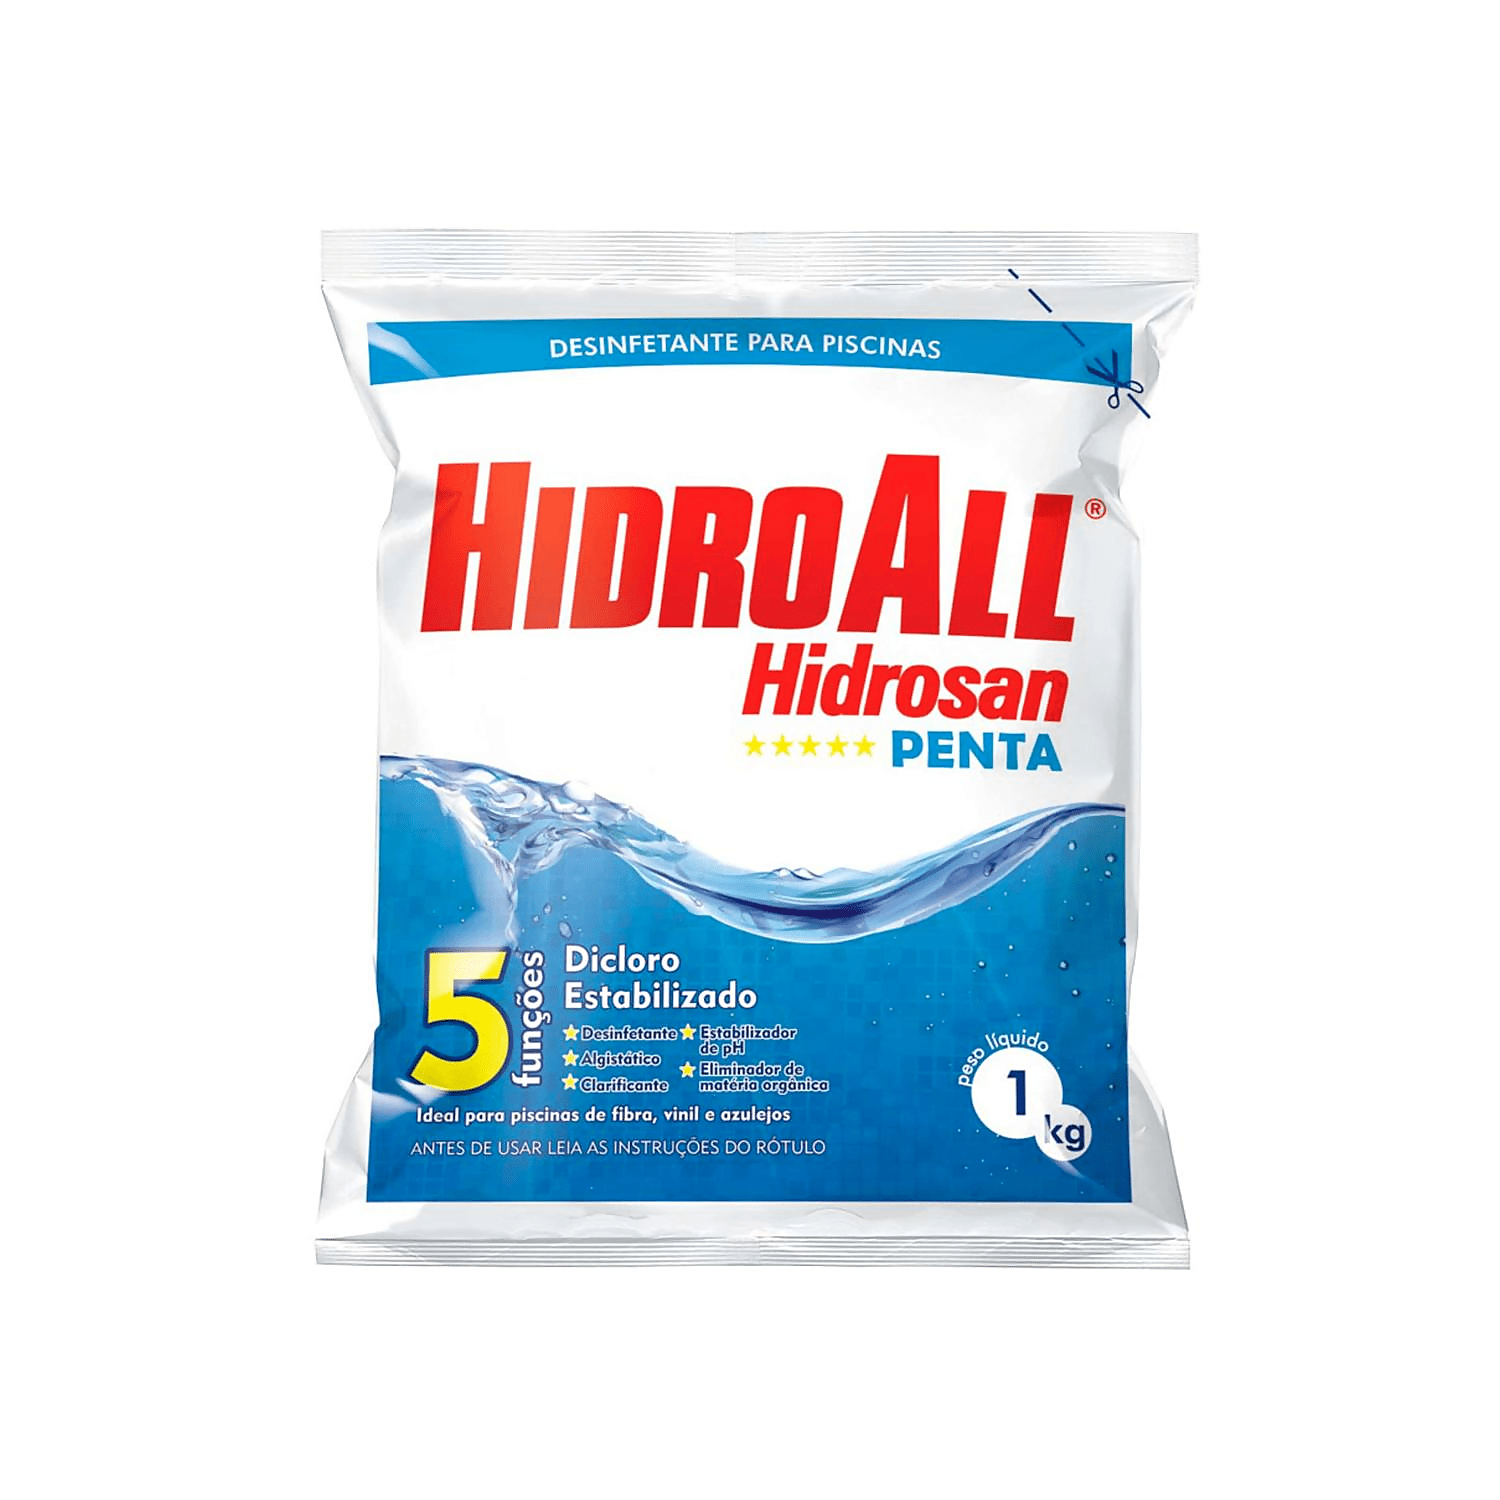 Cloro Granulado Hidrosan Penta 1 kg - Hidroall